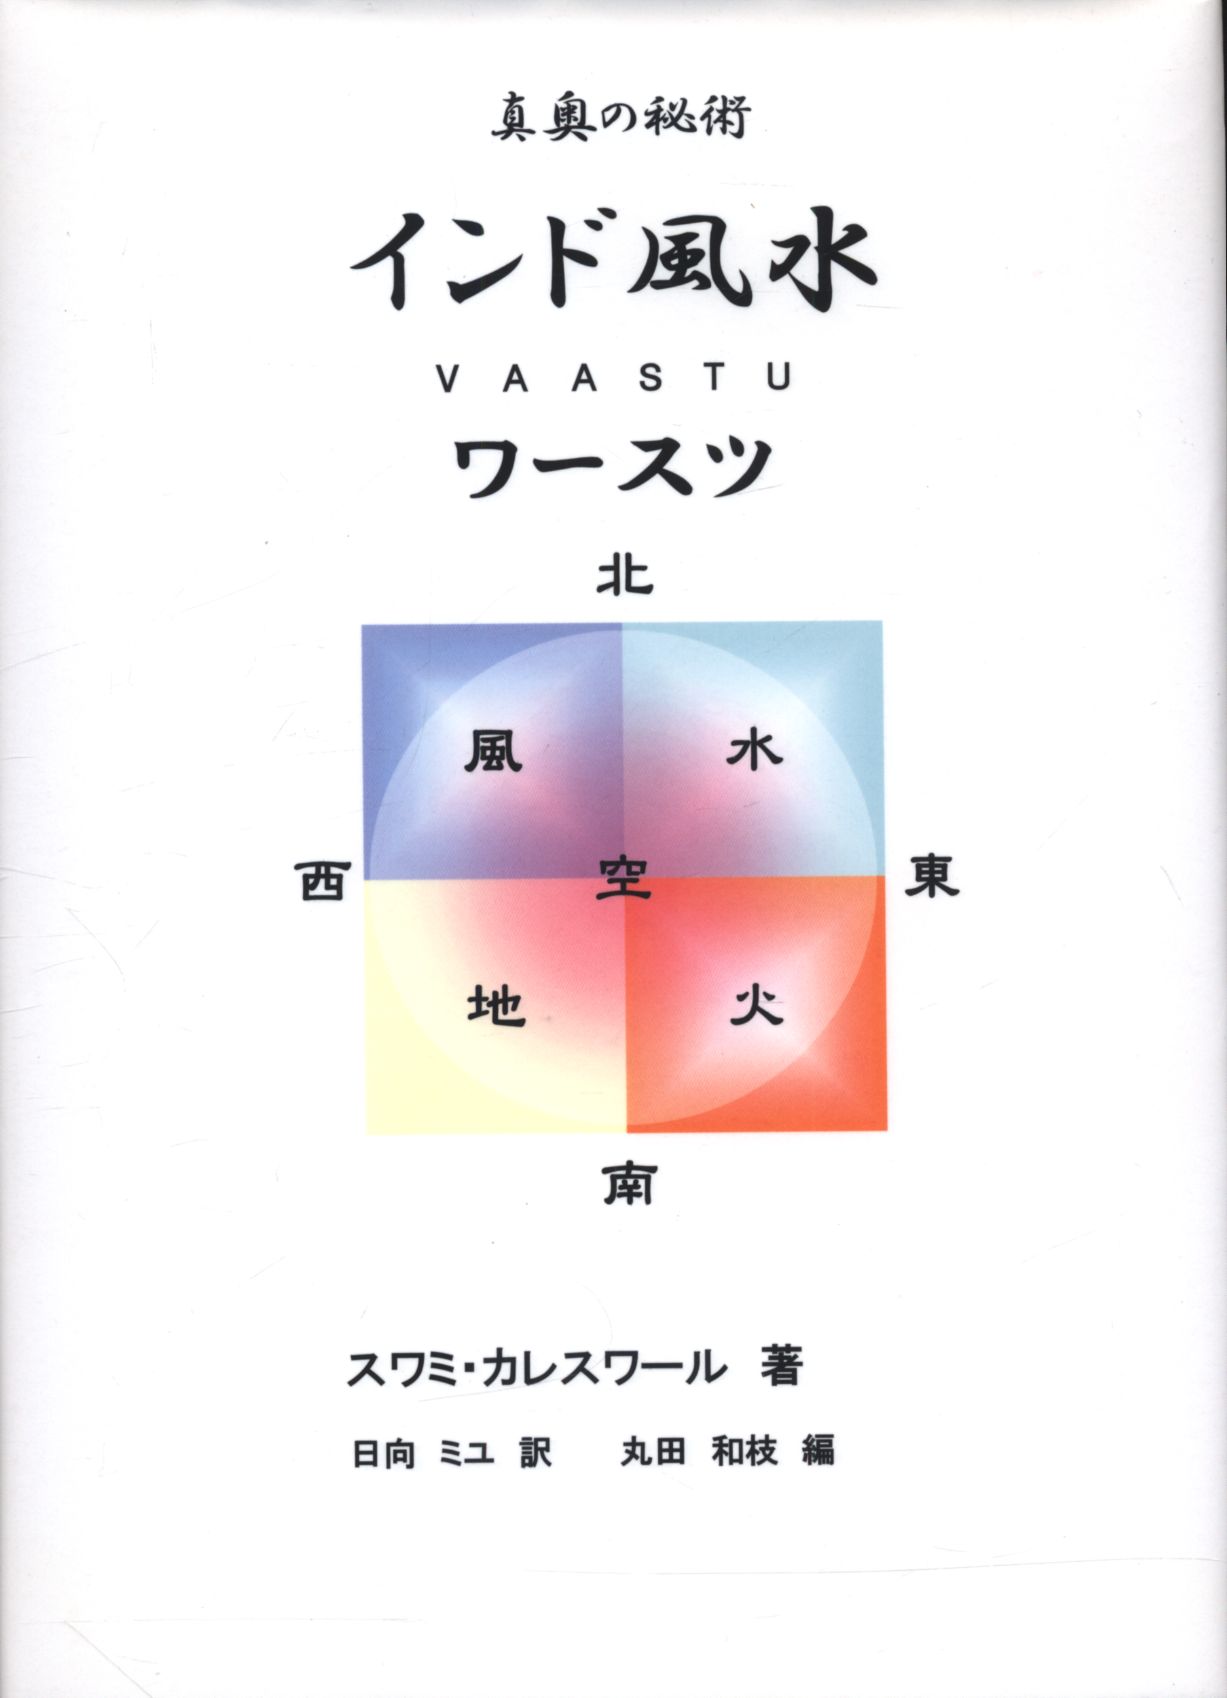 真奥の秘術インド風水ワースツ : 日本初本格的インド風水教本